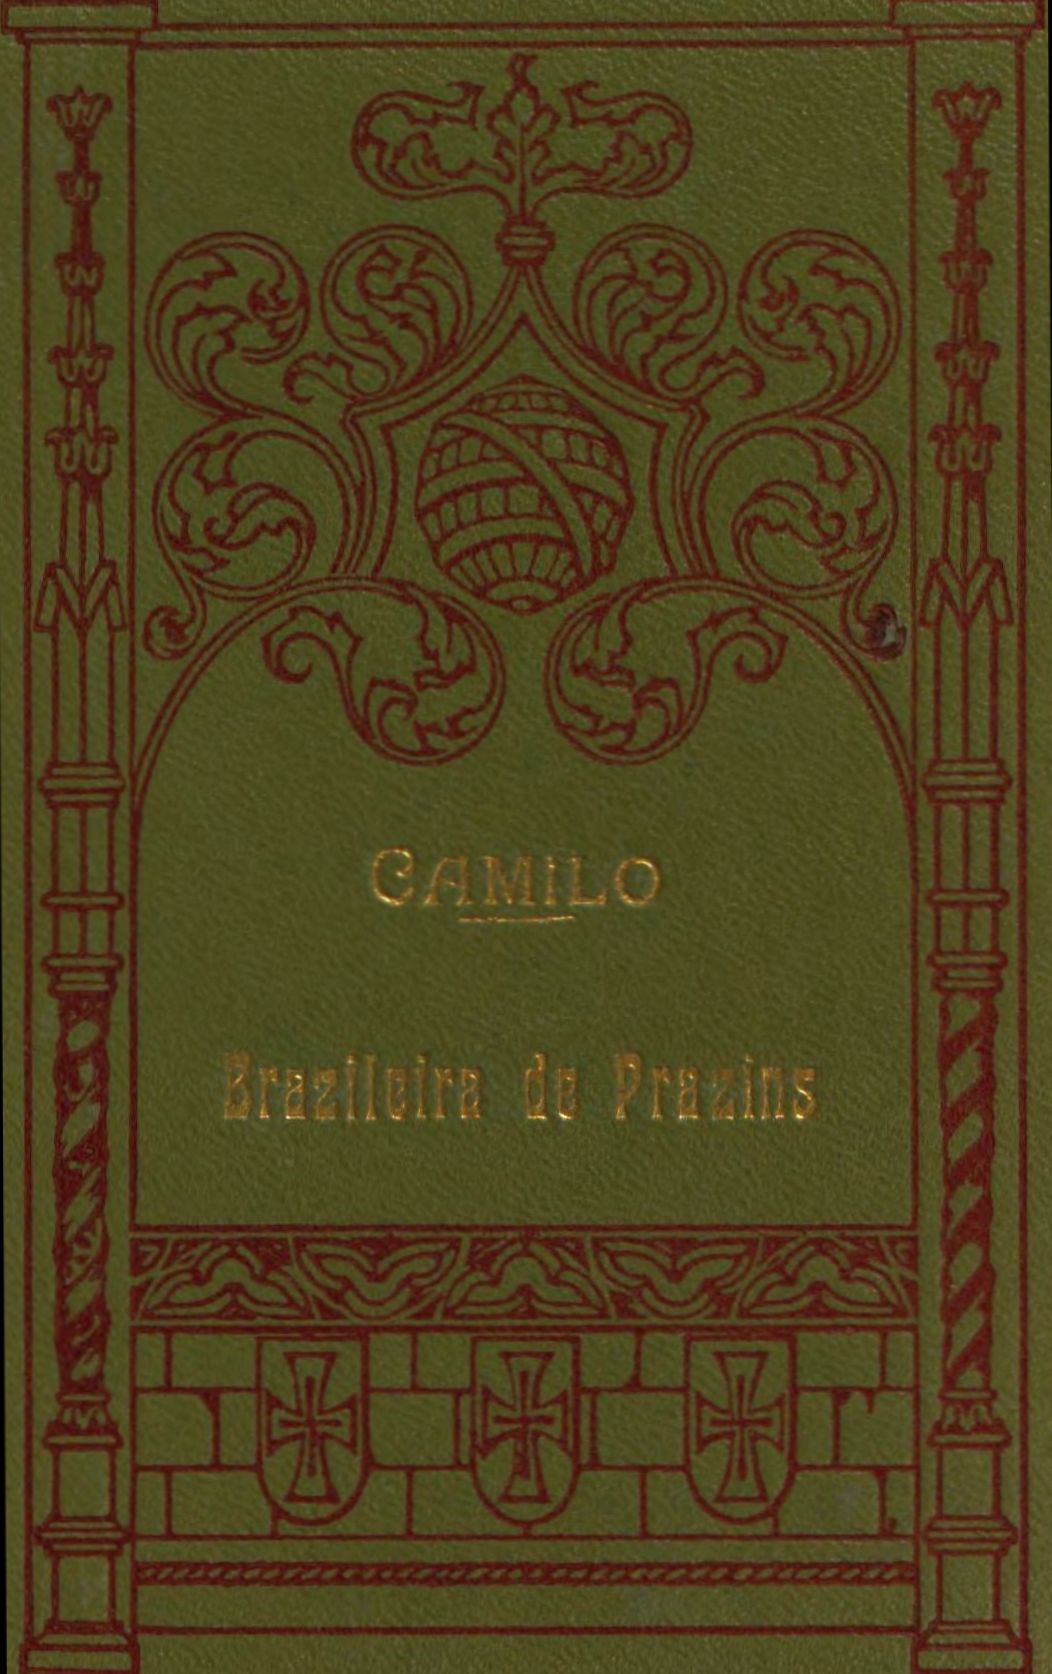 The Project Gutenberg eBook of A brazileira de Prazins, by Camilo Castelo Branco. foto